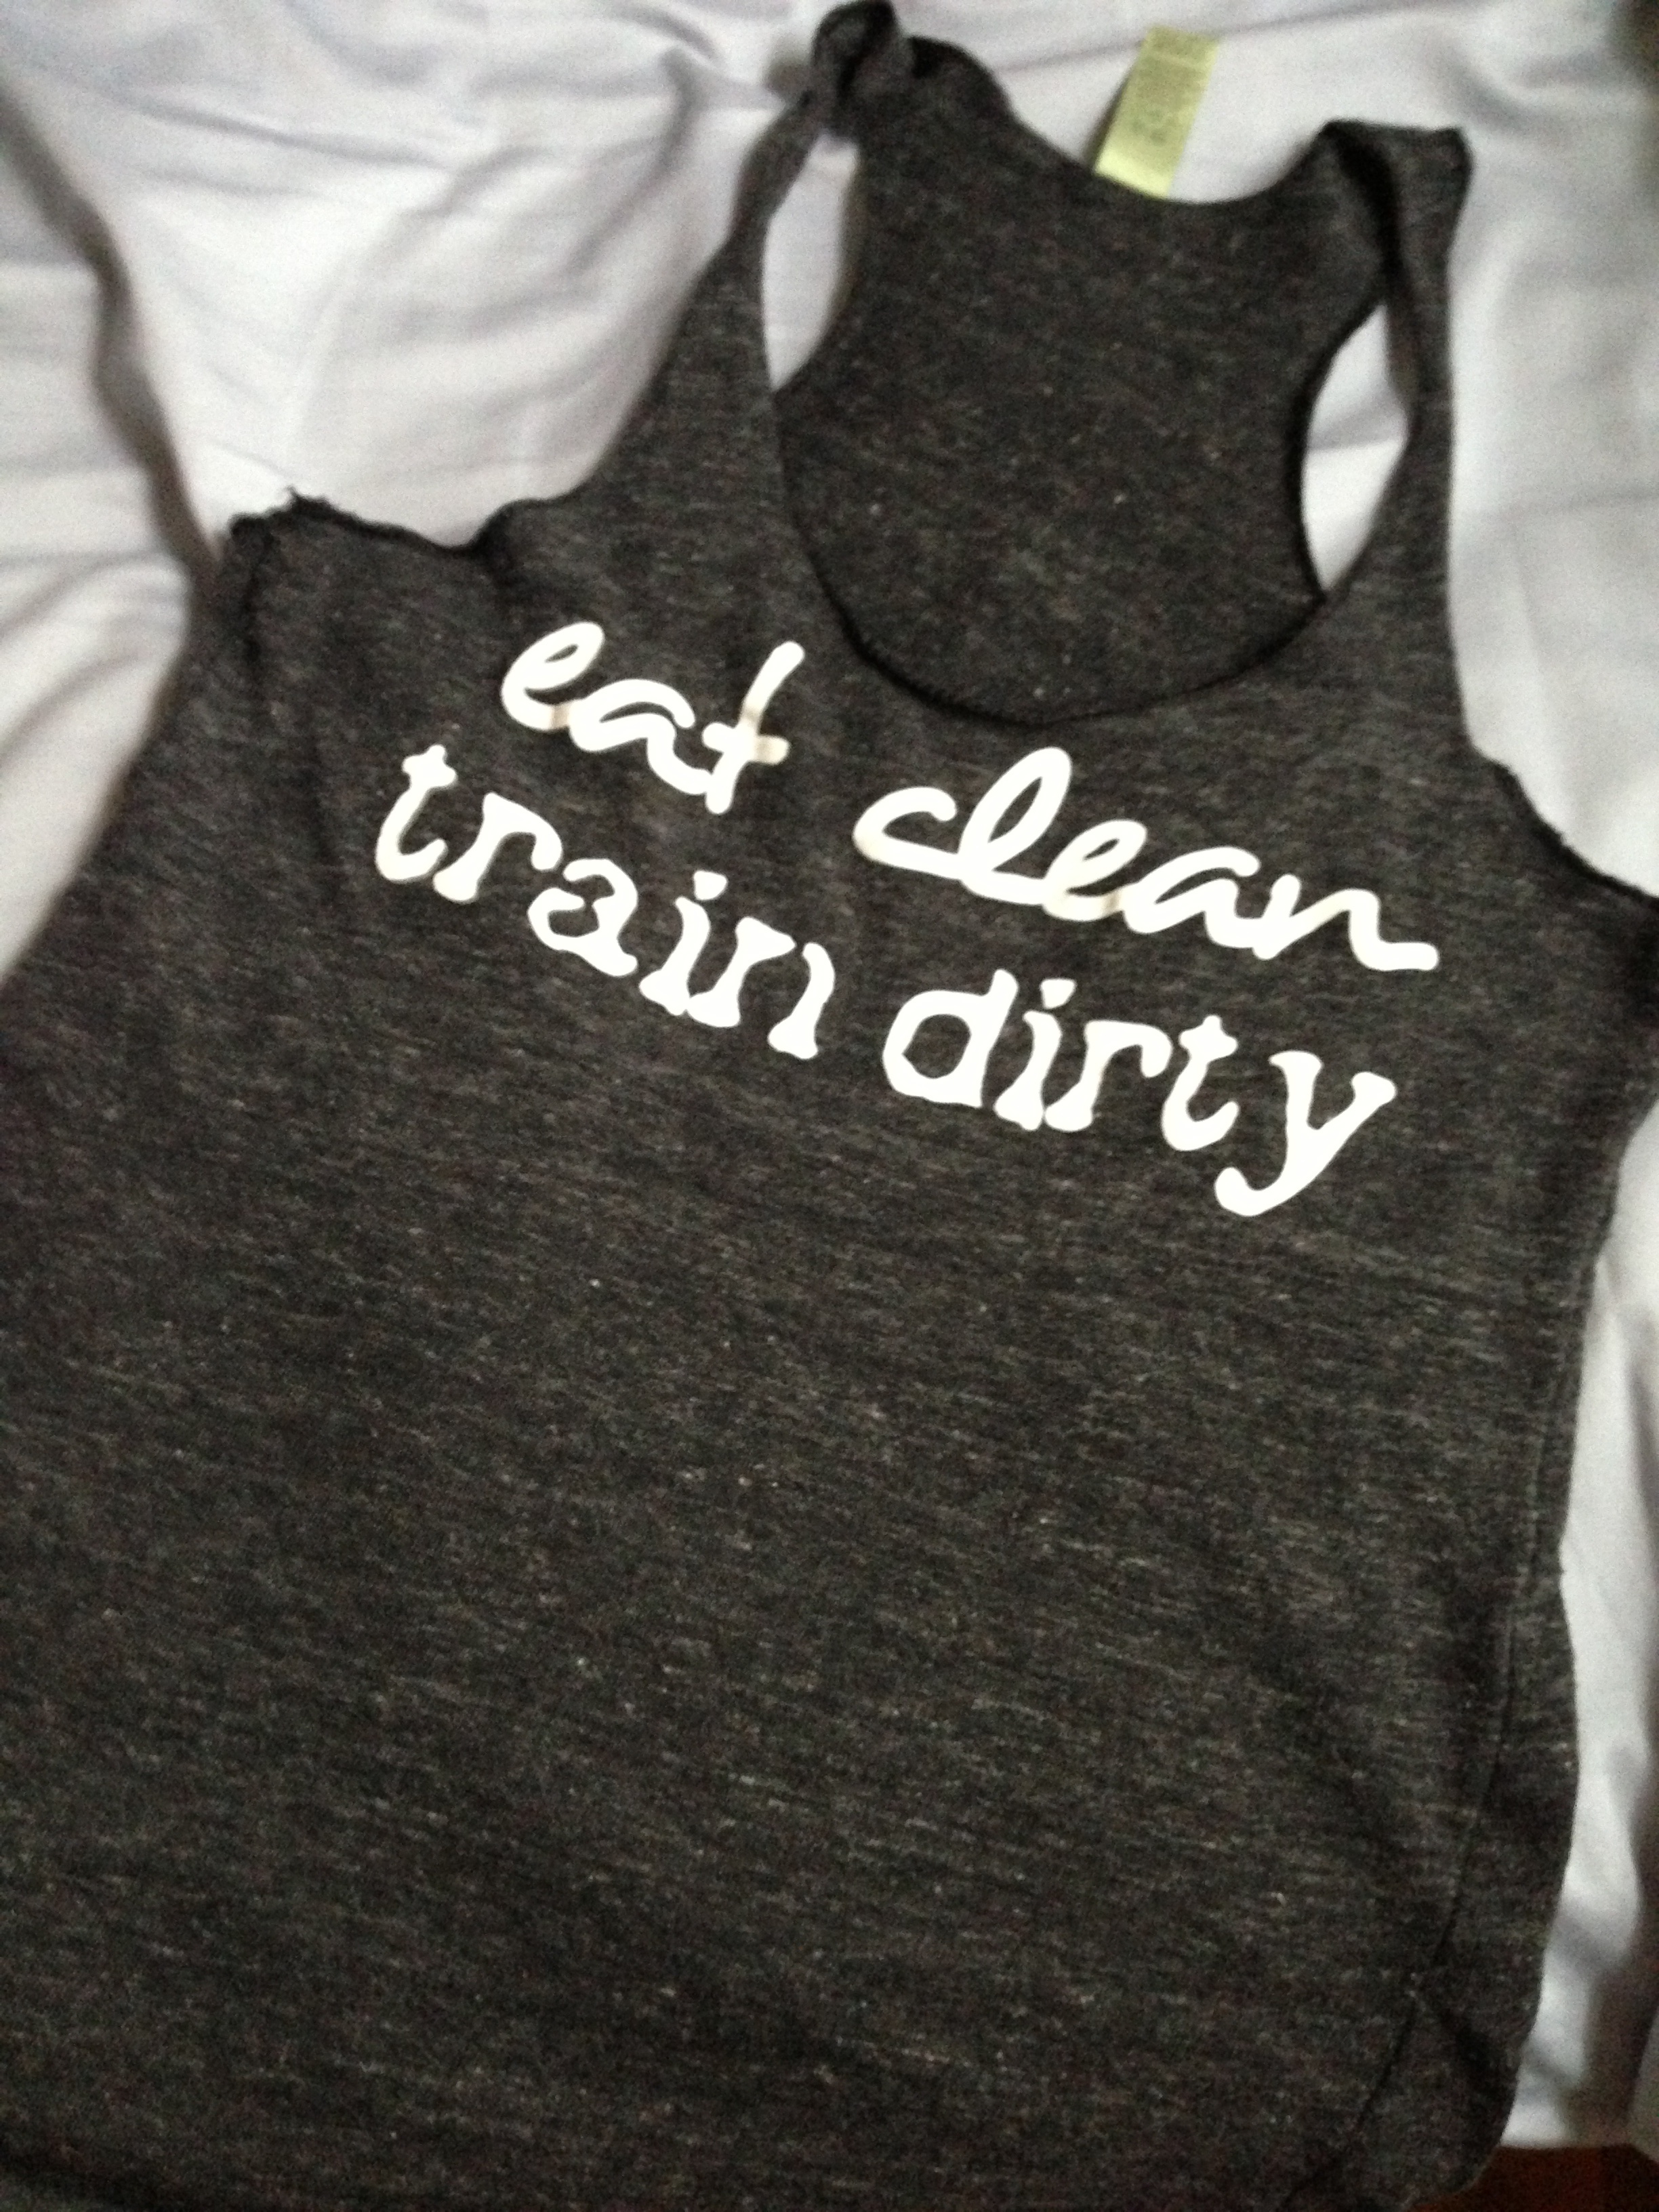 eat clean train dirty